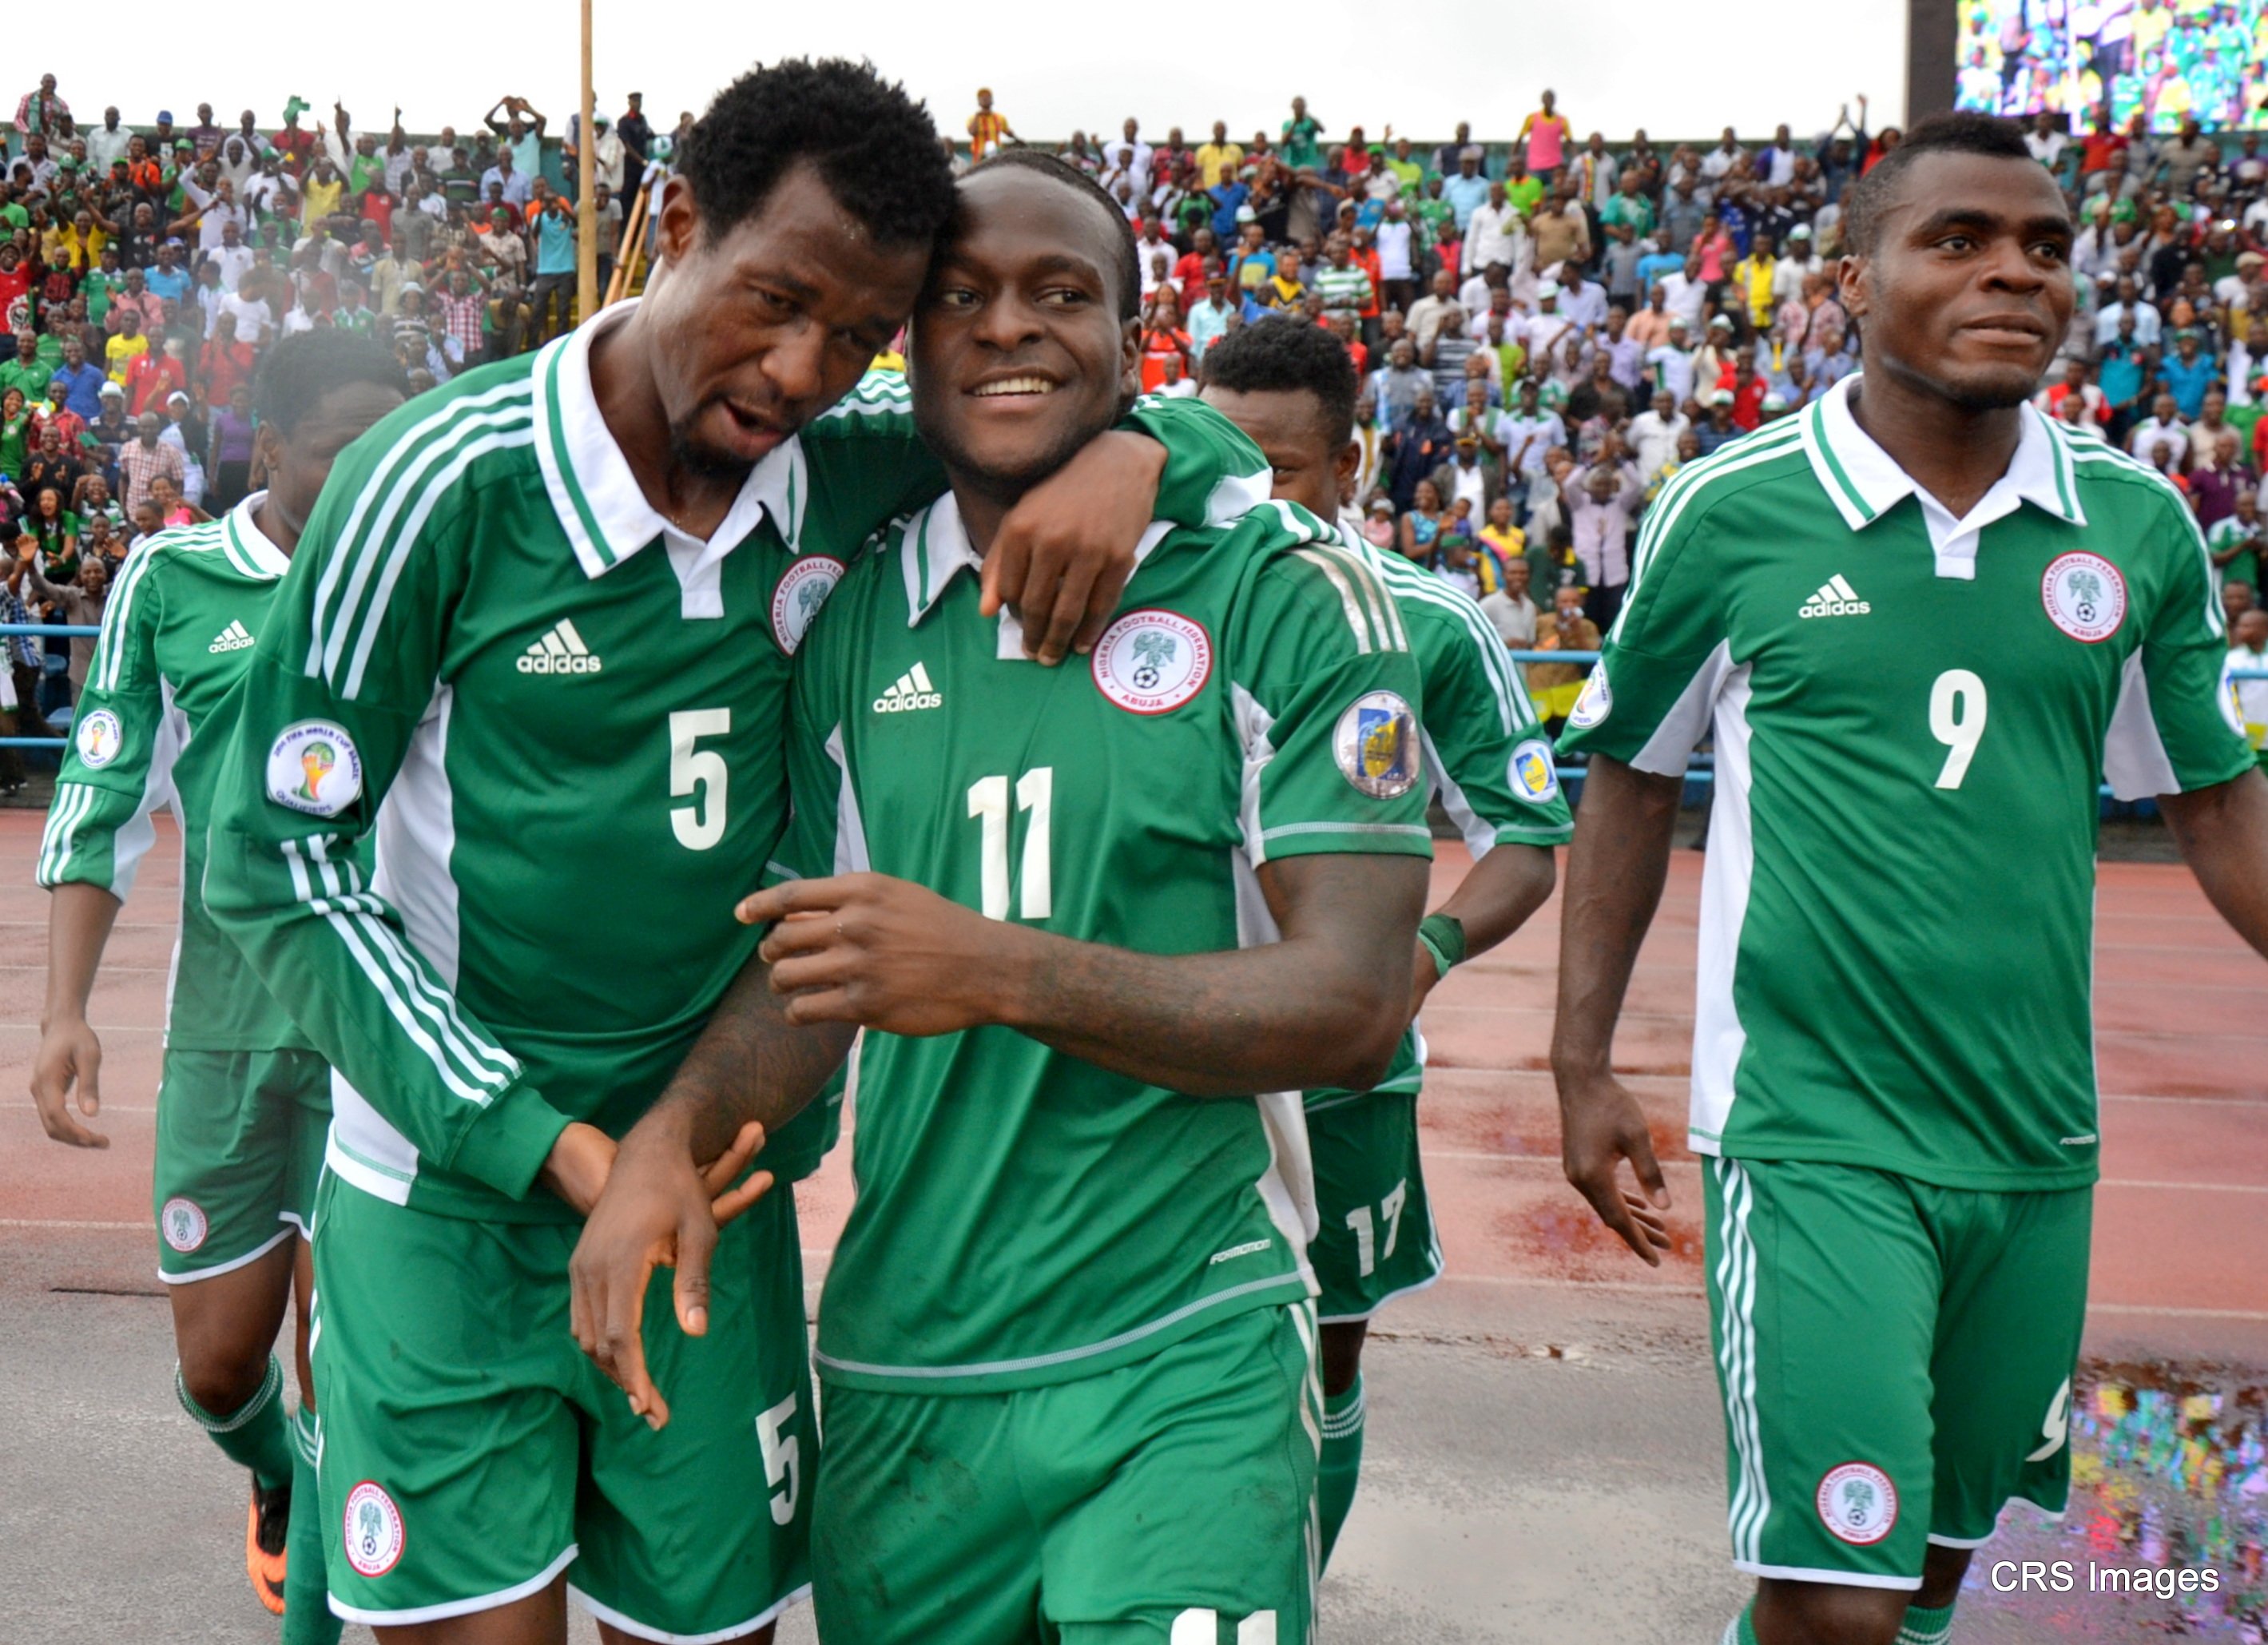 Nwankwo Kanu, Obaobona, Eagles players, others , upbeat for Brazil 2014 qualification, jubilant over Malawi spanking